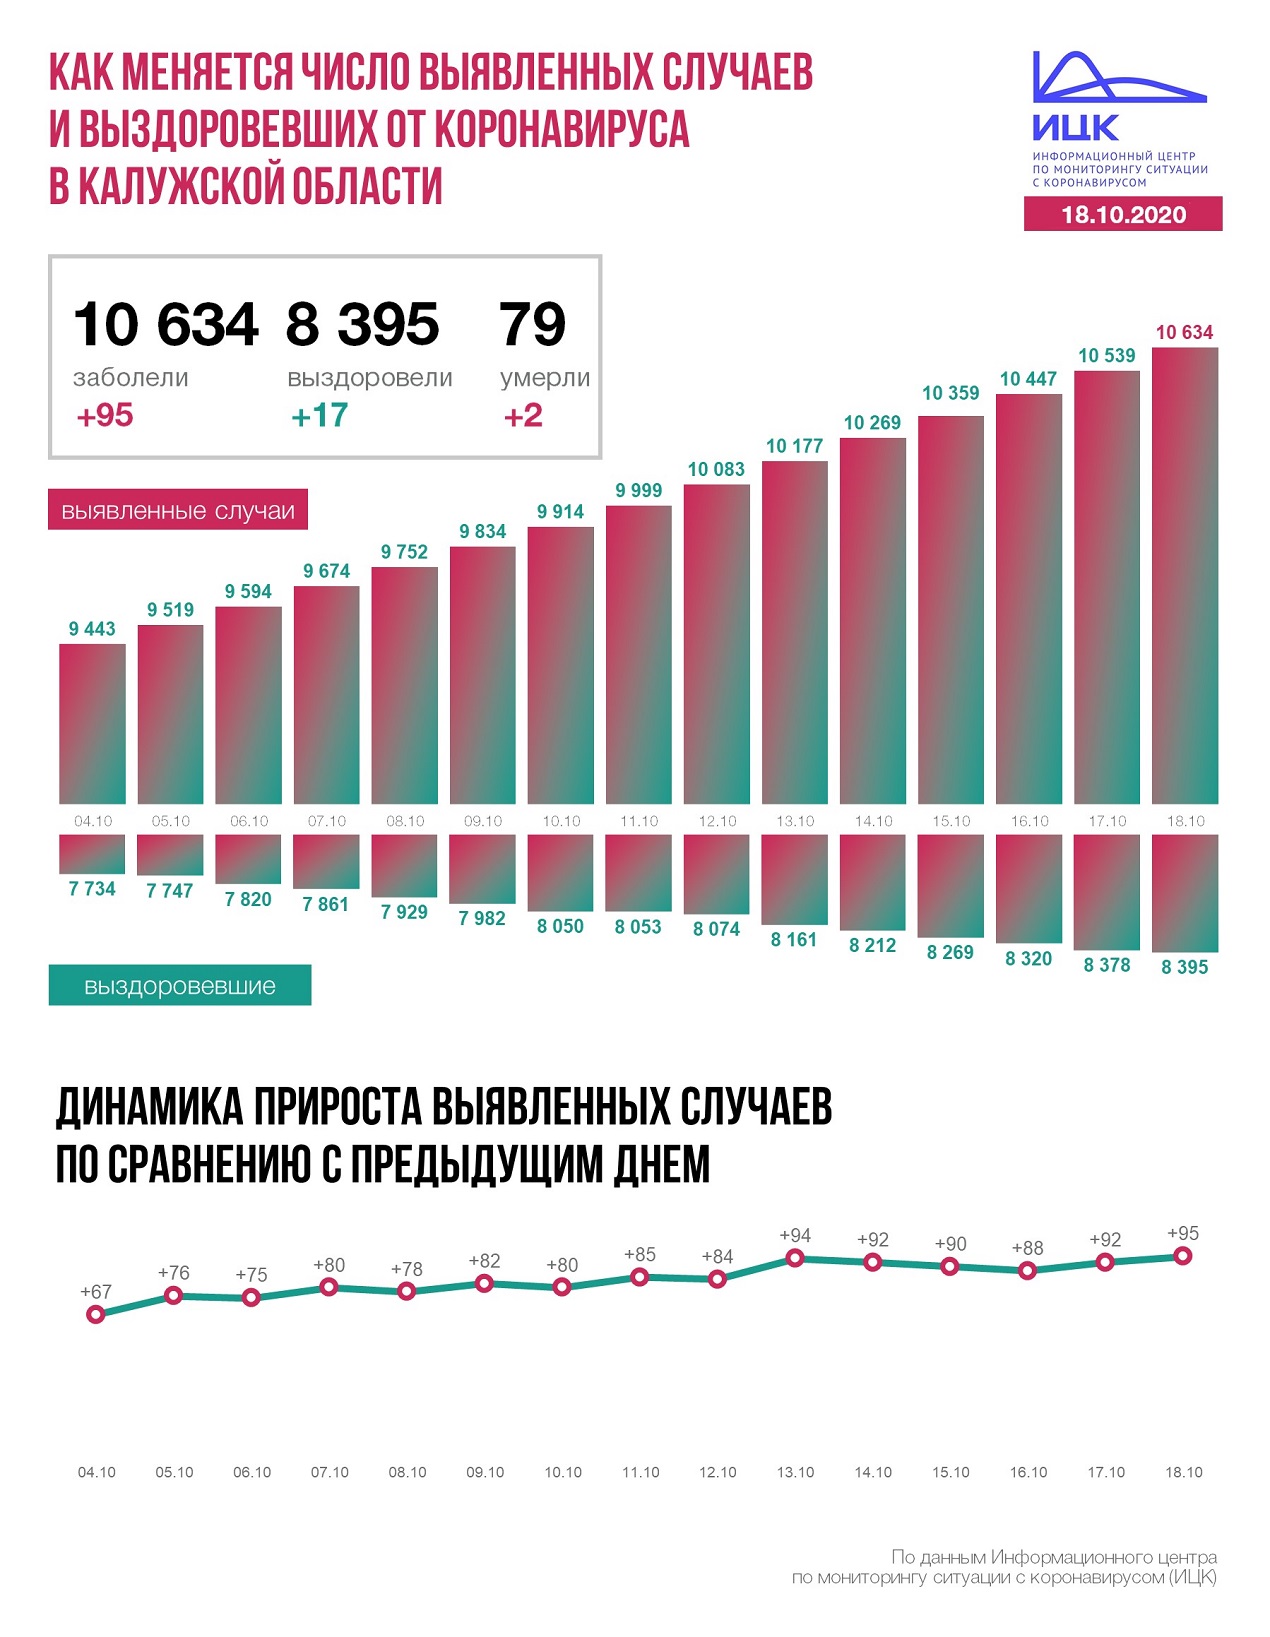 Официальные данные федерального оперативного штаба по коронавирусу в Калужской области на 18 октября 2020 года.